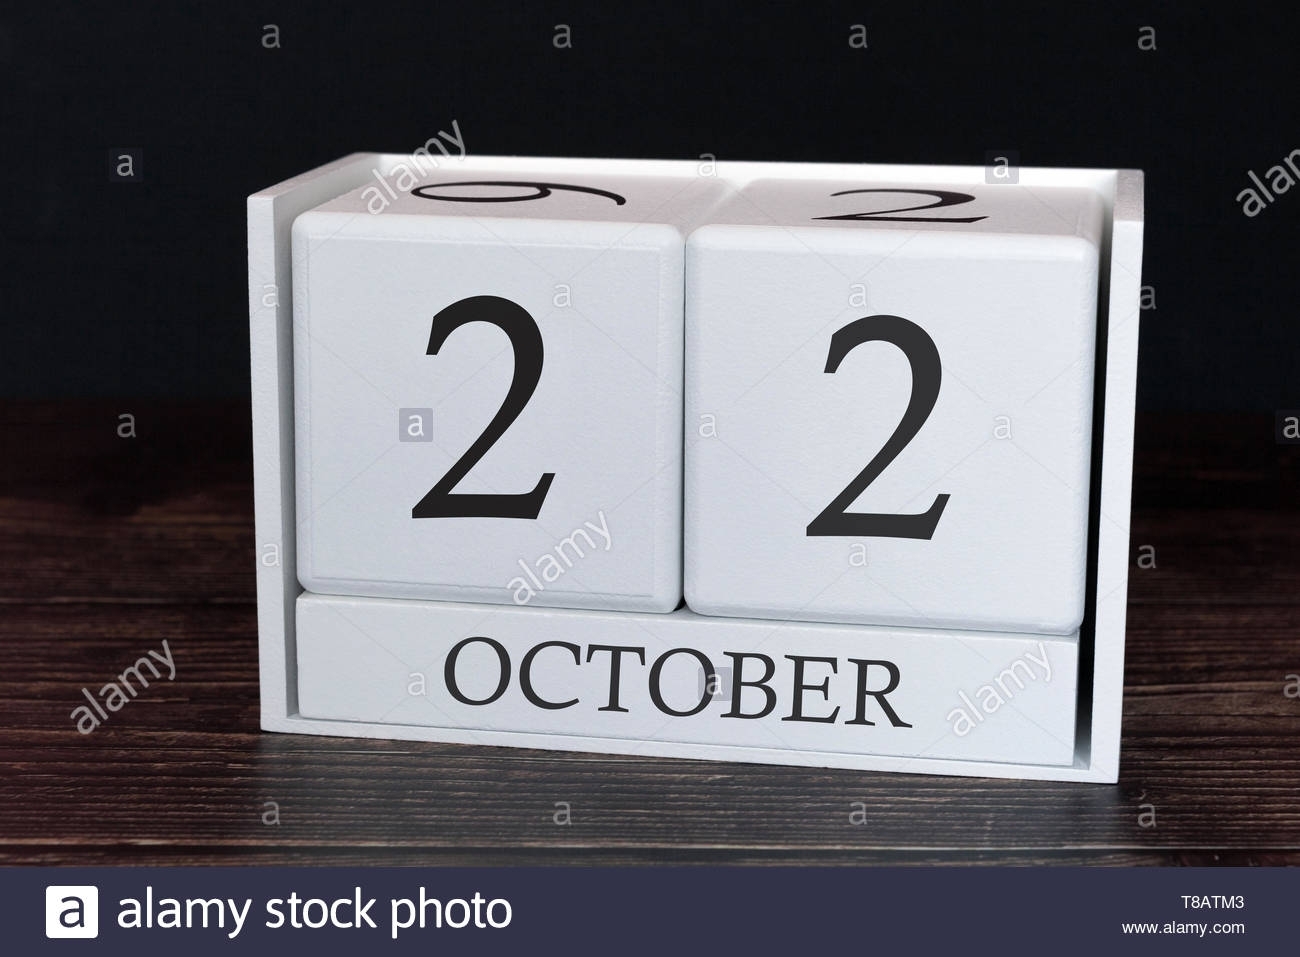 Get Full Day Planner Calendar For October 22